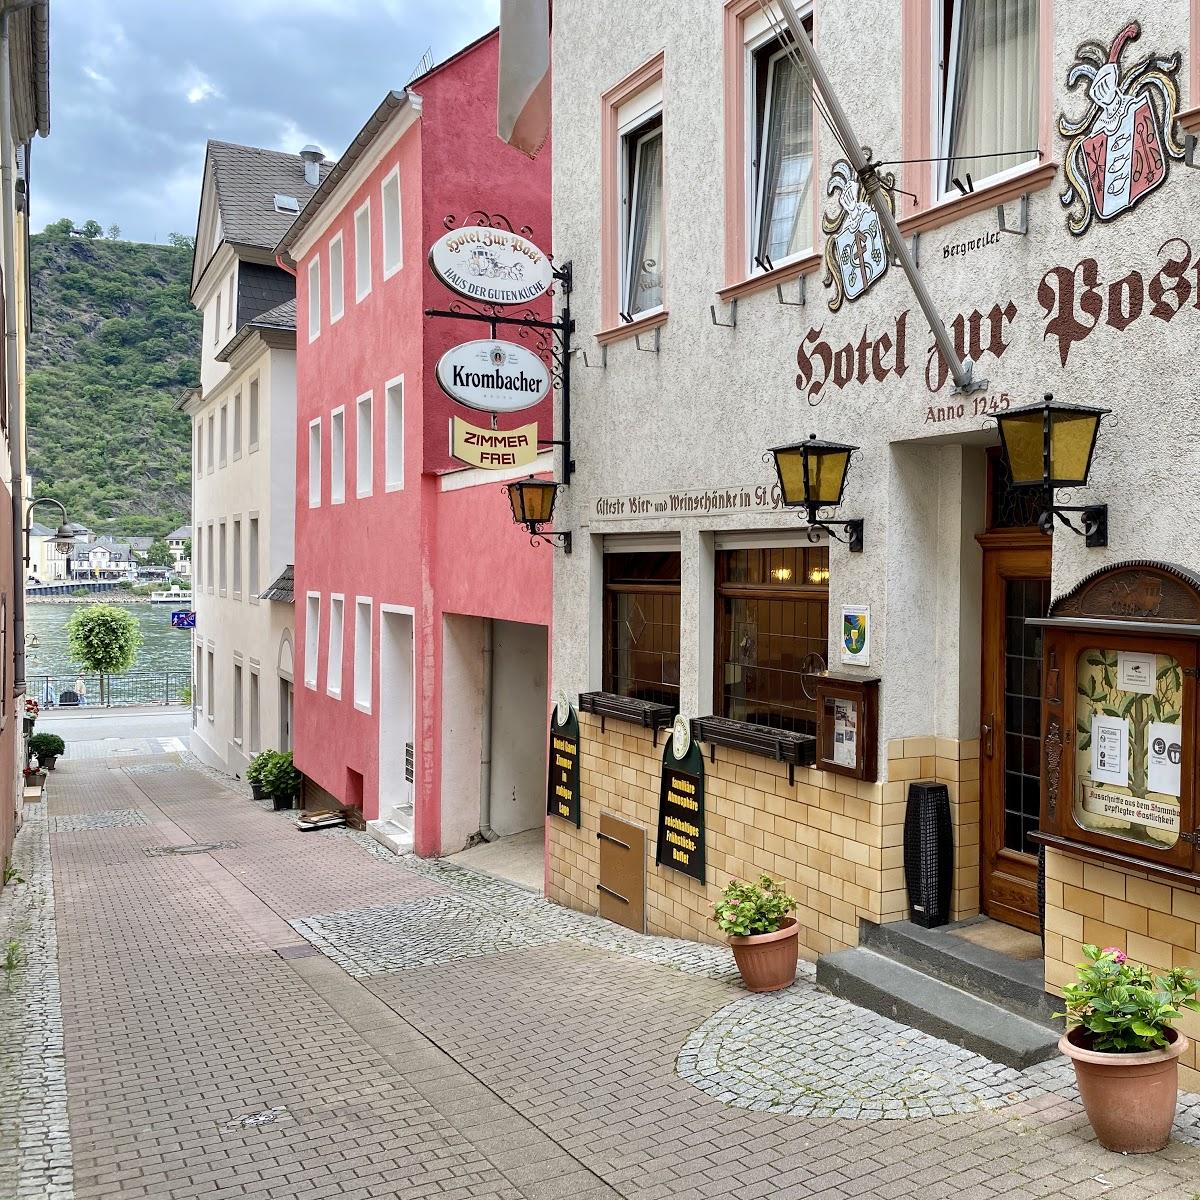 Restaurant "Hotel Zur Post" in Sankt Goar